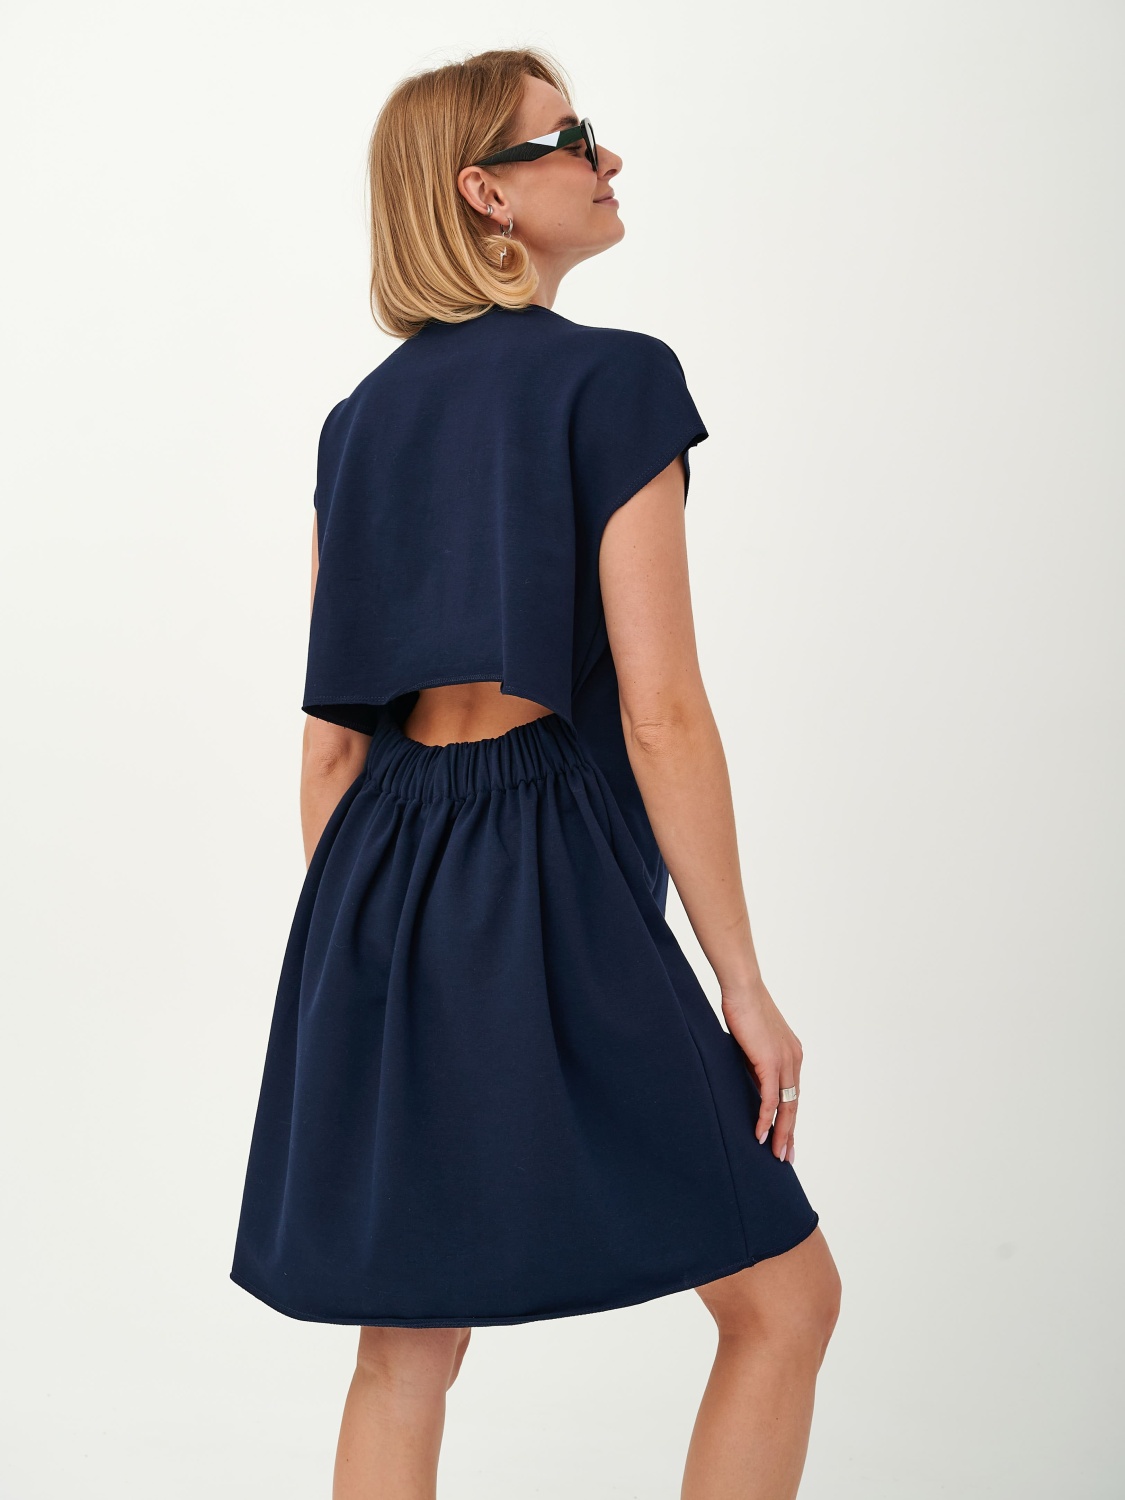 Платье-футболка с открытой спиной (XS-S, Темно-синий)